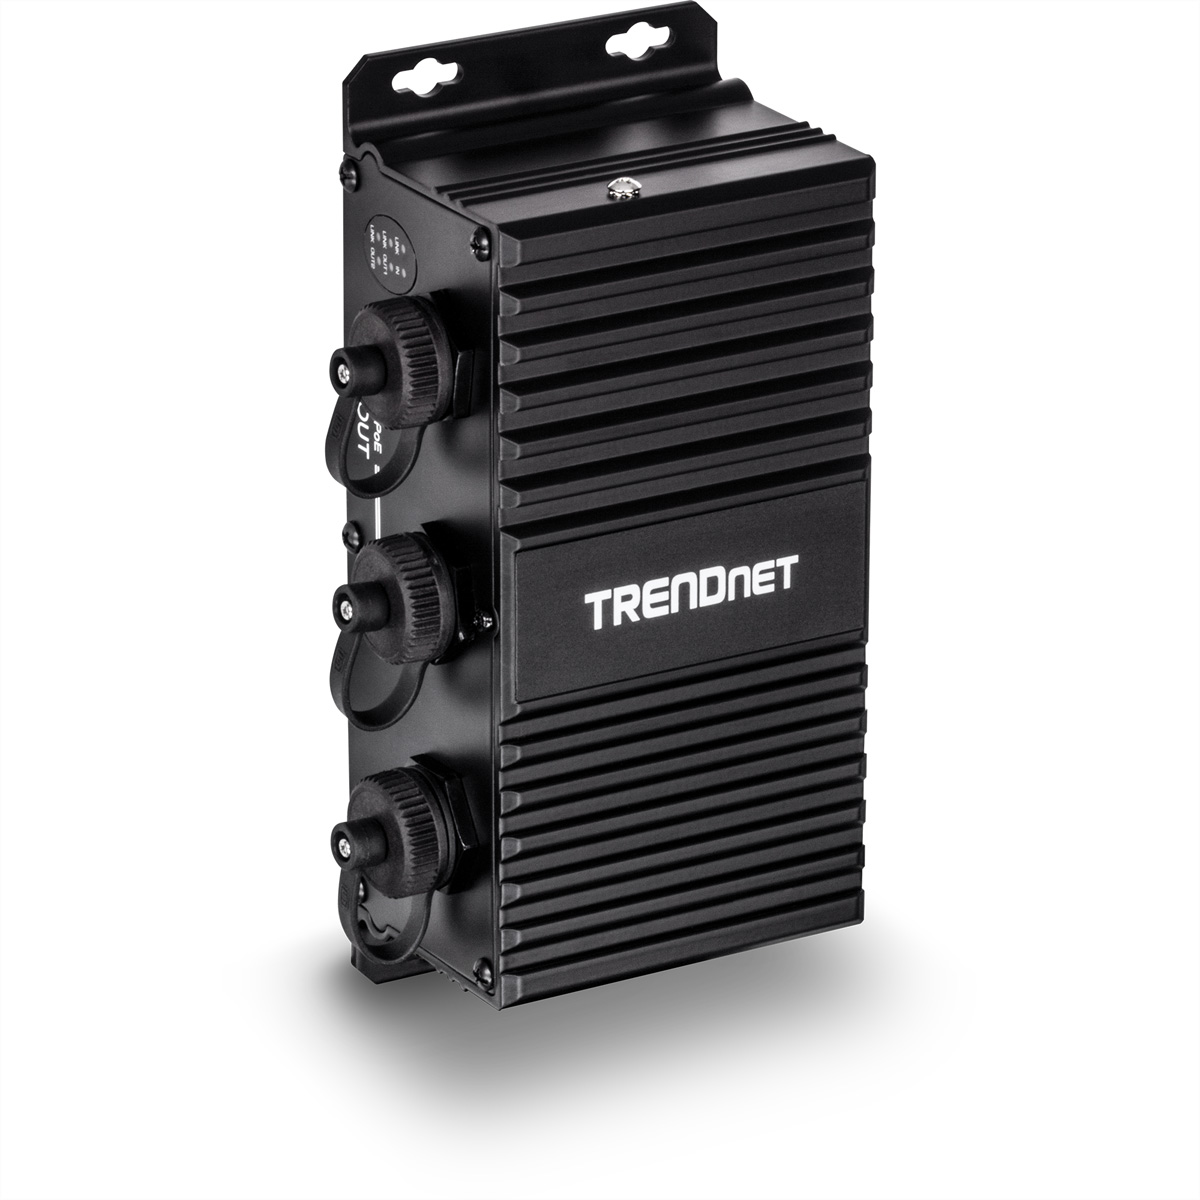 Gigabit Industrial 2-Port Injektor Gigabit Extender TRENDNET Outdoor PoE TI-EU120 UPoE